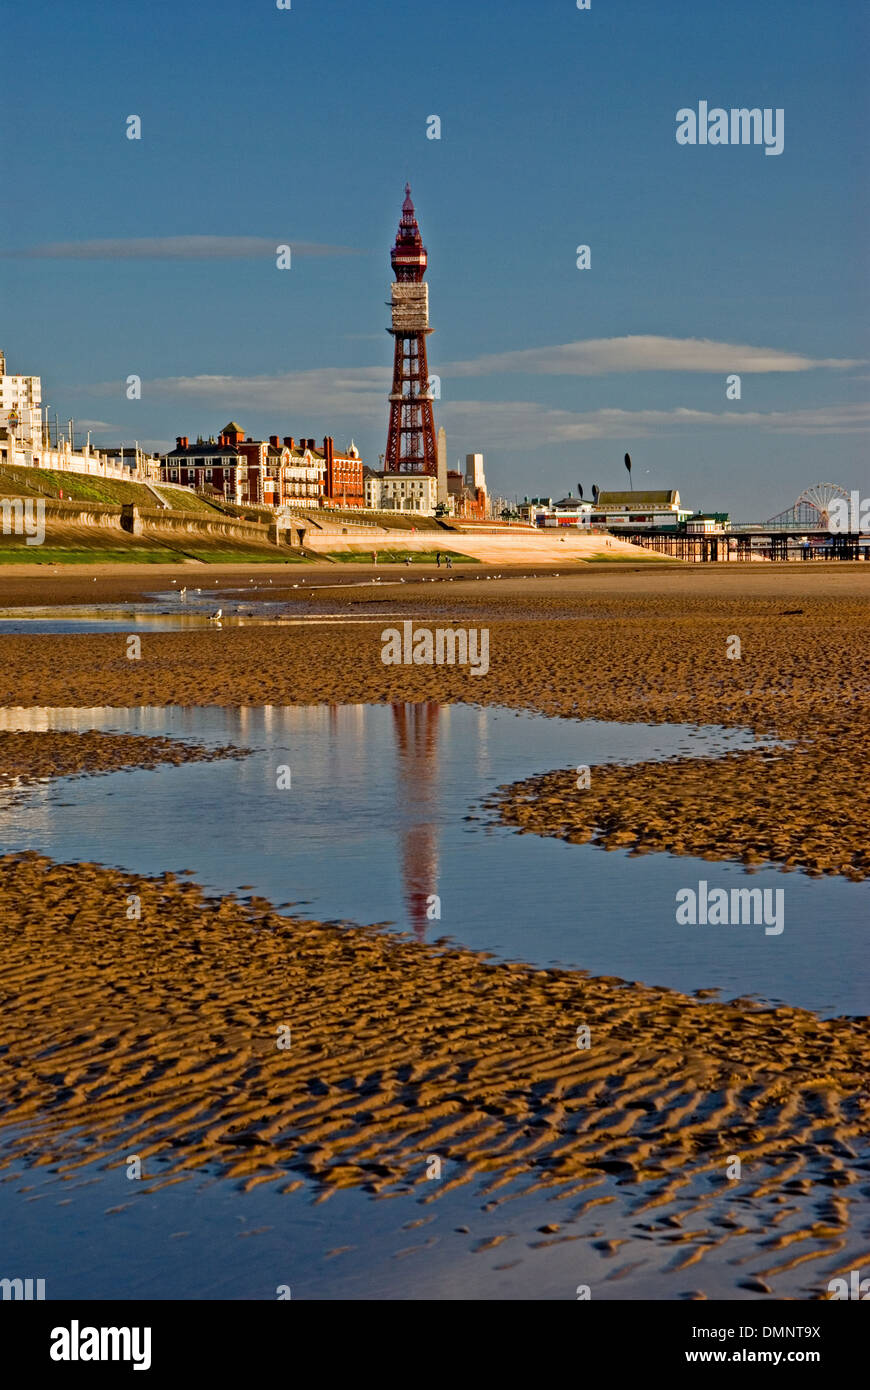 À marée basse, la mer d'Irlande expose de vastes étendues de plages de sable ondulant le long du front de mer de Blackpool. Banque D'Images